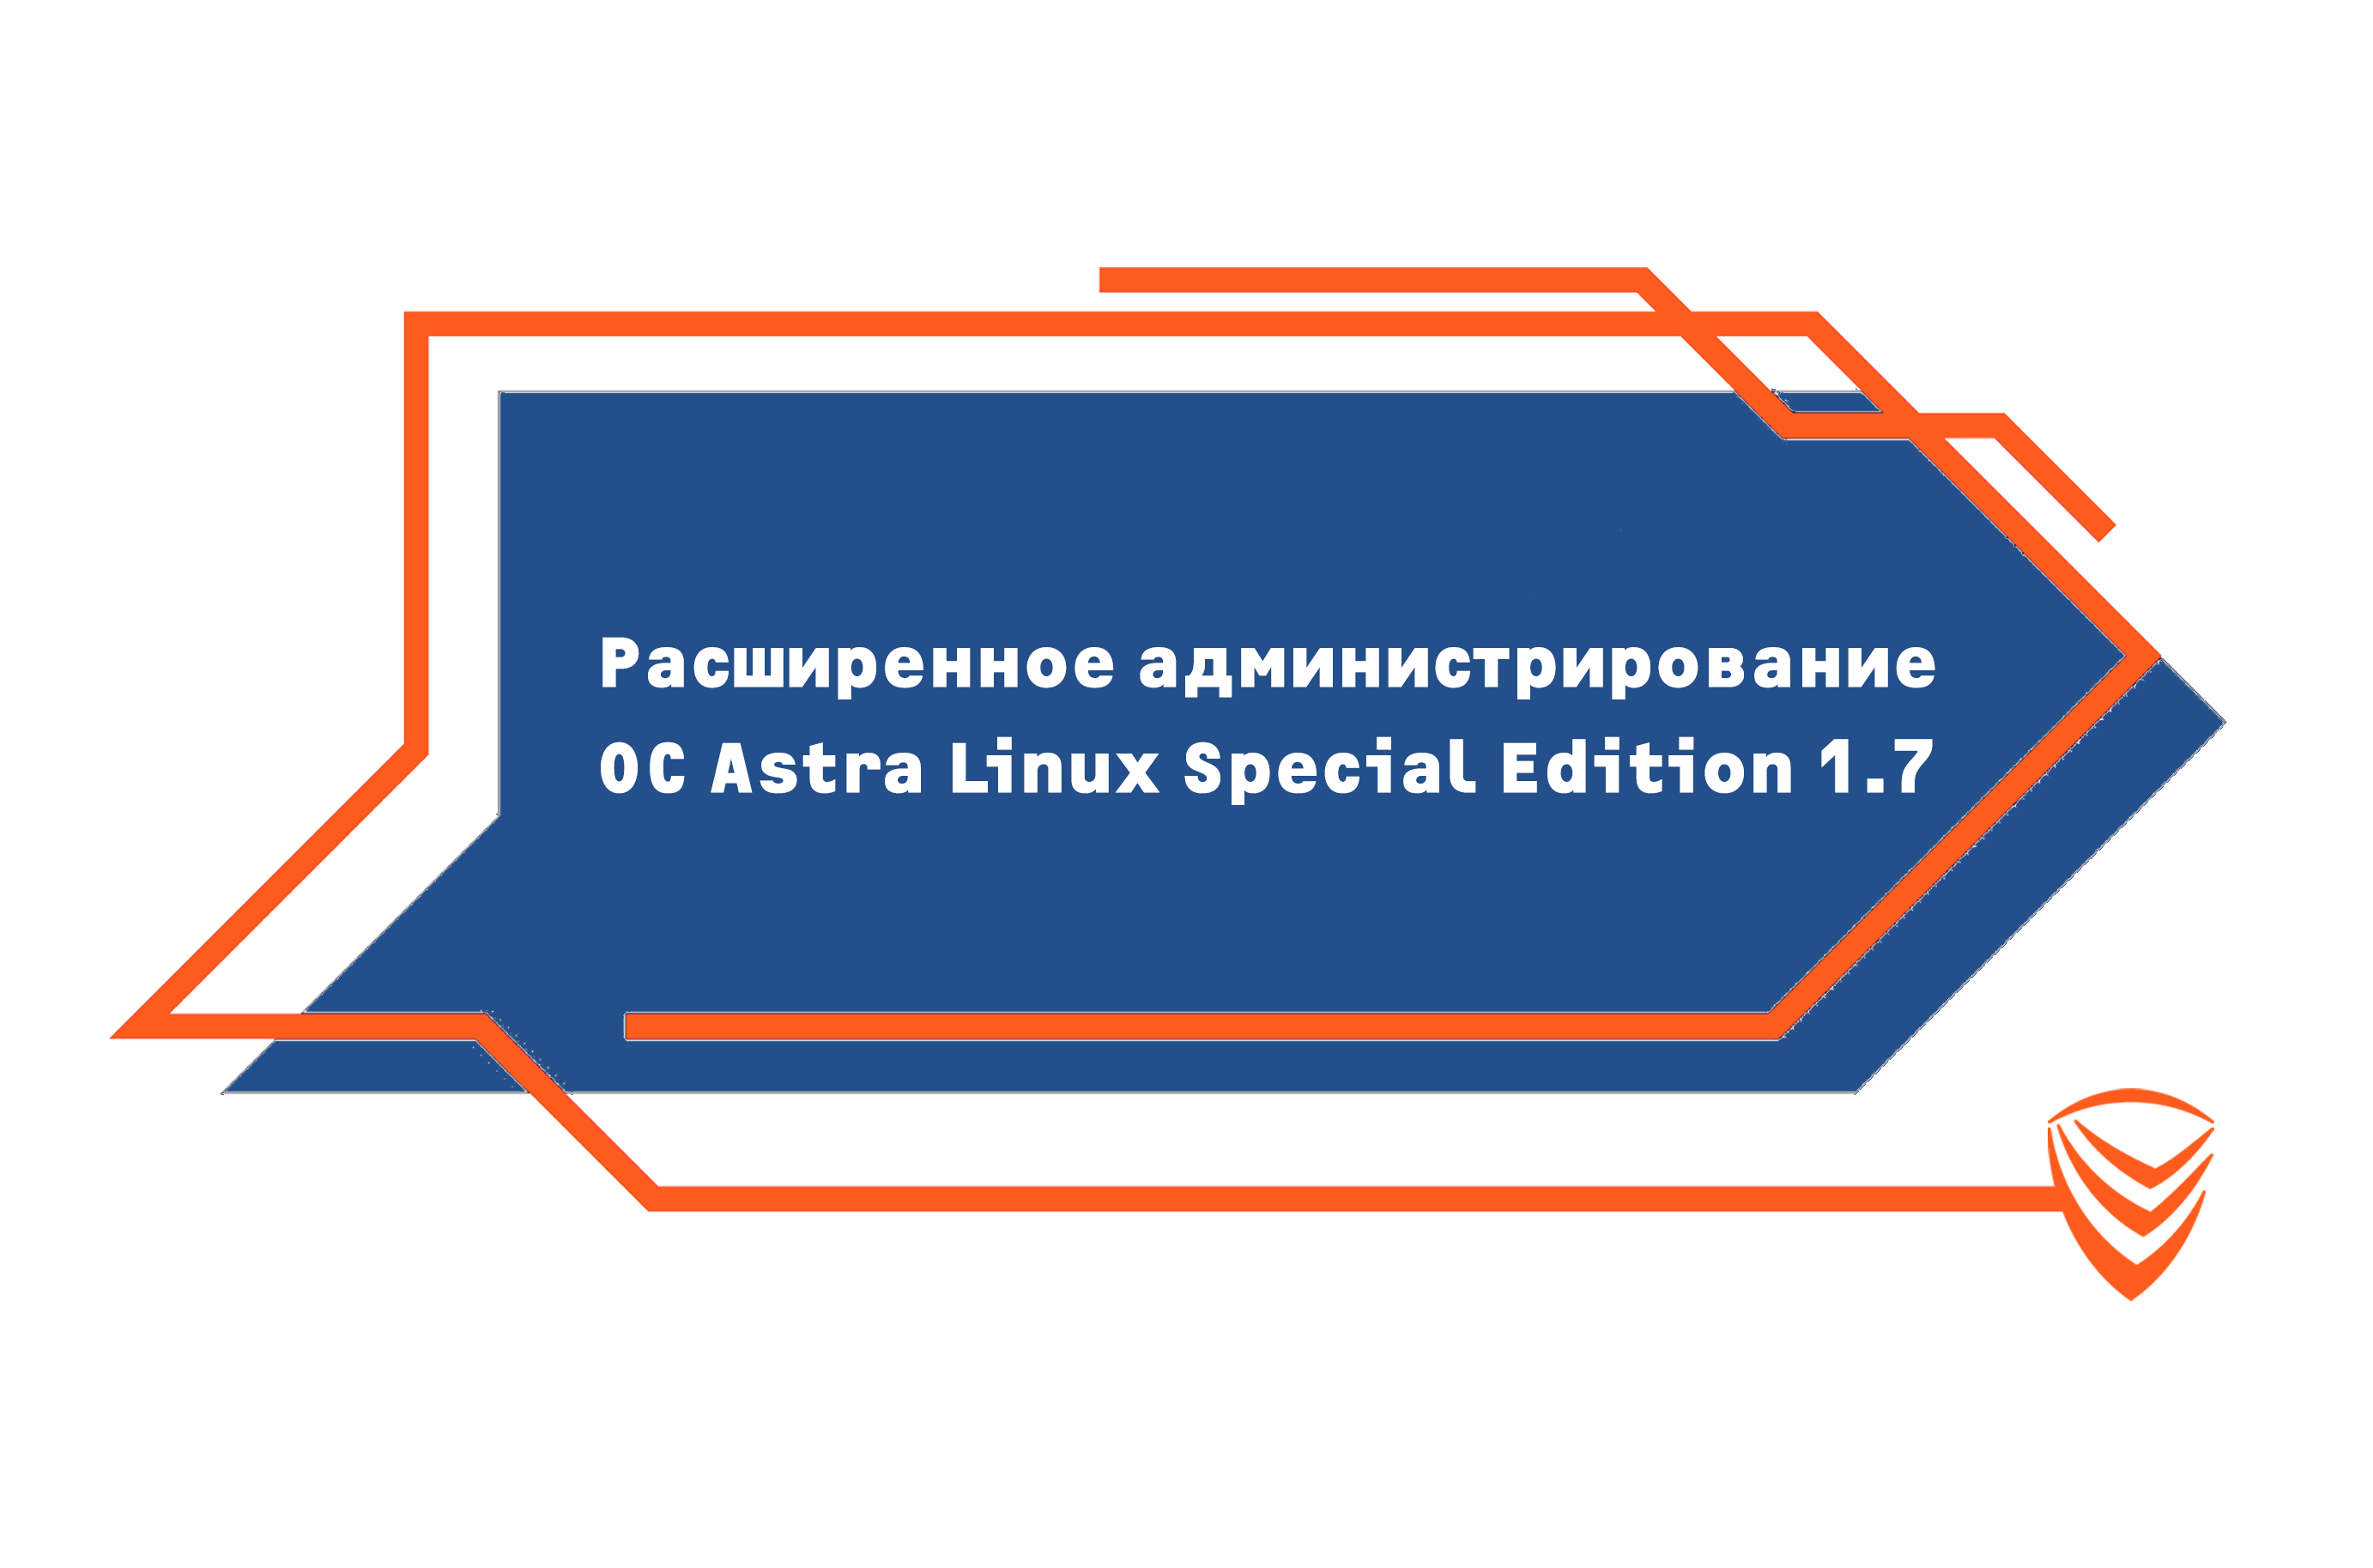 AL-1703 - Расширенное администрирование ОС Astra Linux Special Edition 1.7